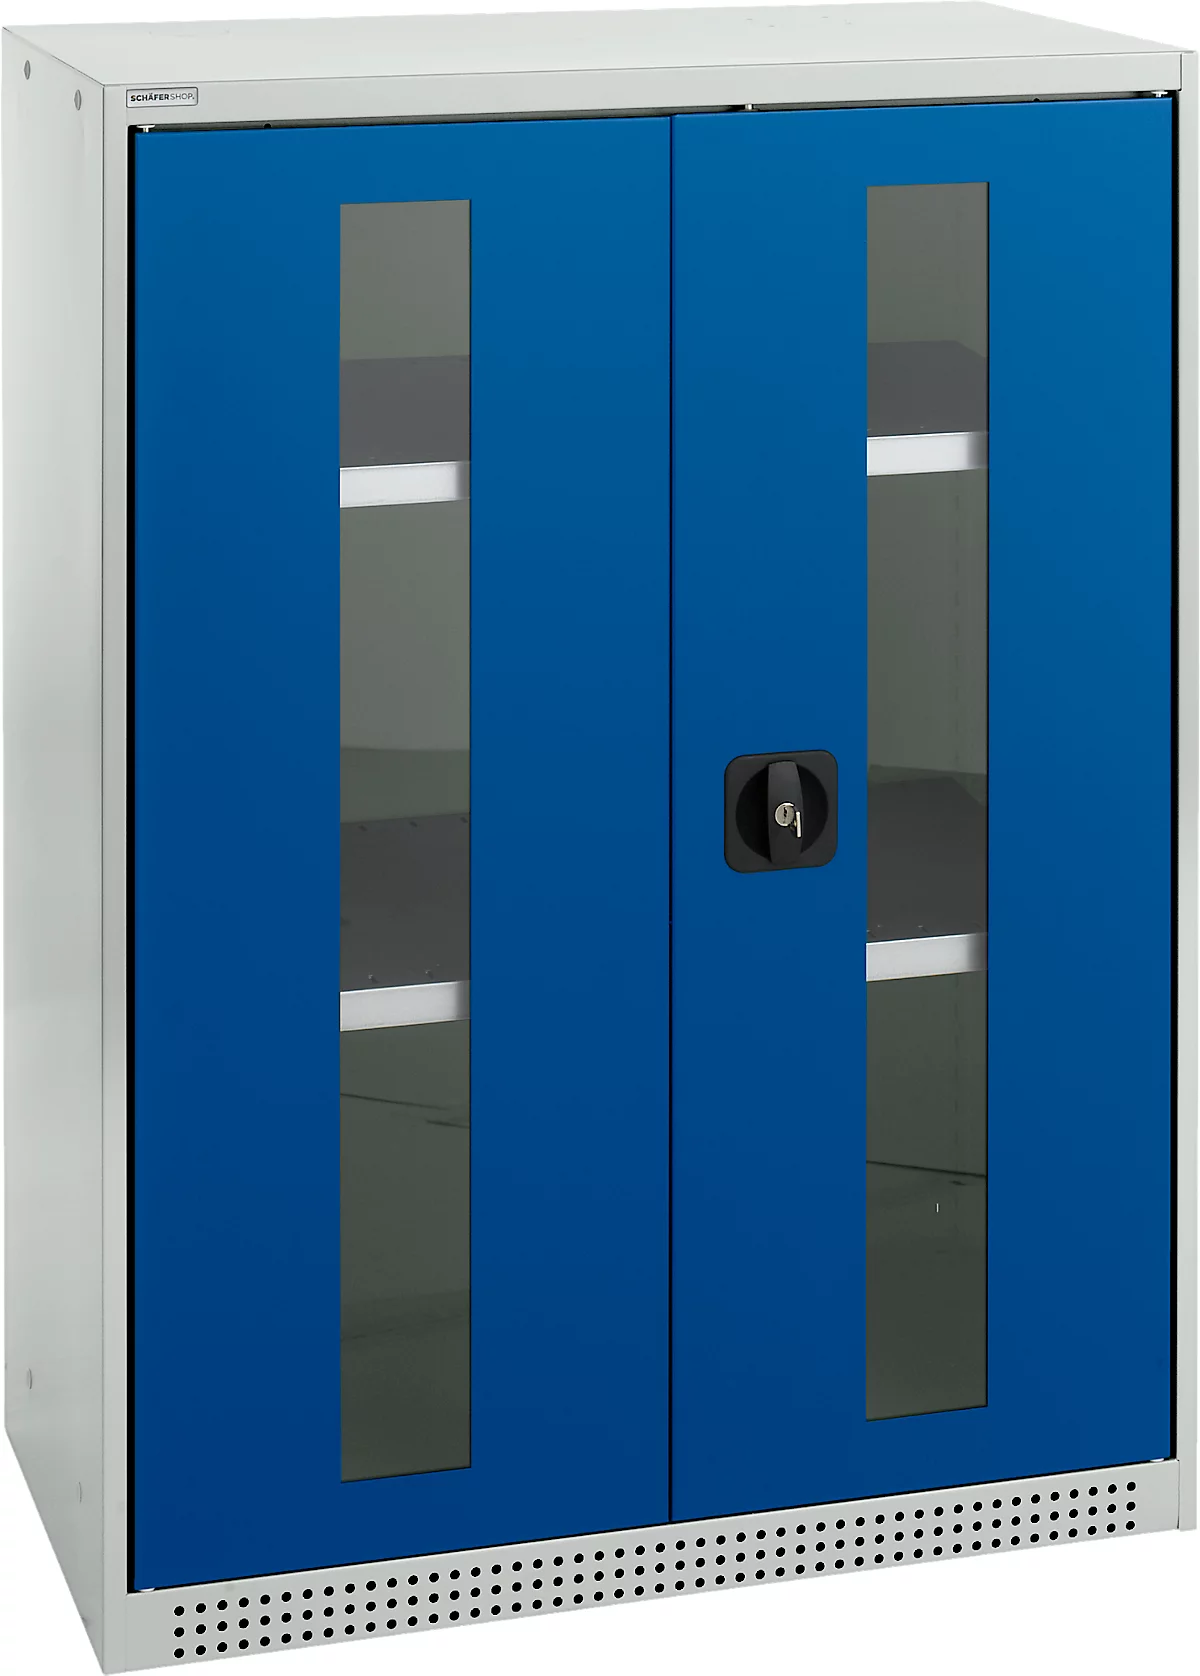 Schäfer Shop Genius armario de doble puerta FS, acero, ventana, agujeros de ventilación, A 810 x P 520 x A 1105 mm, 3 OH, gris claro/ azul genciana, hasta 180 kg